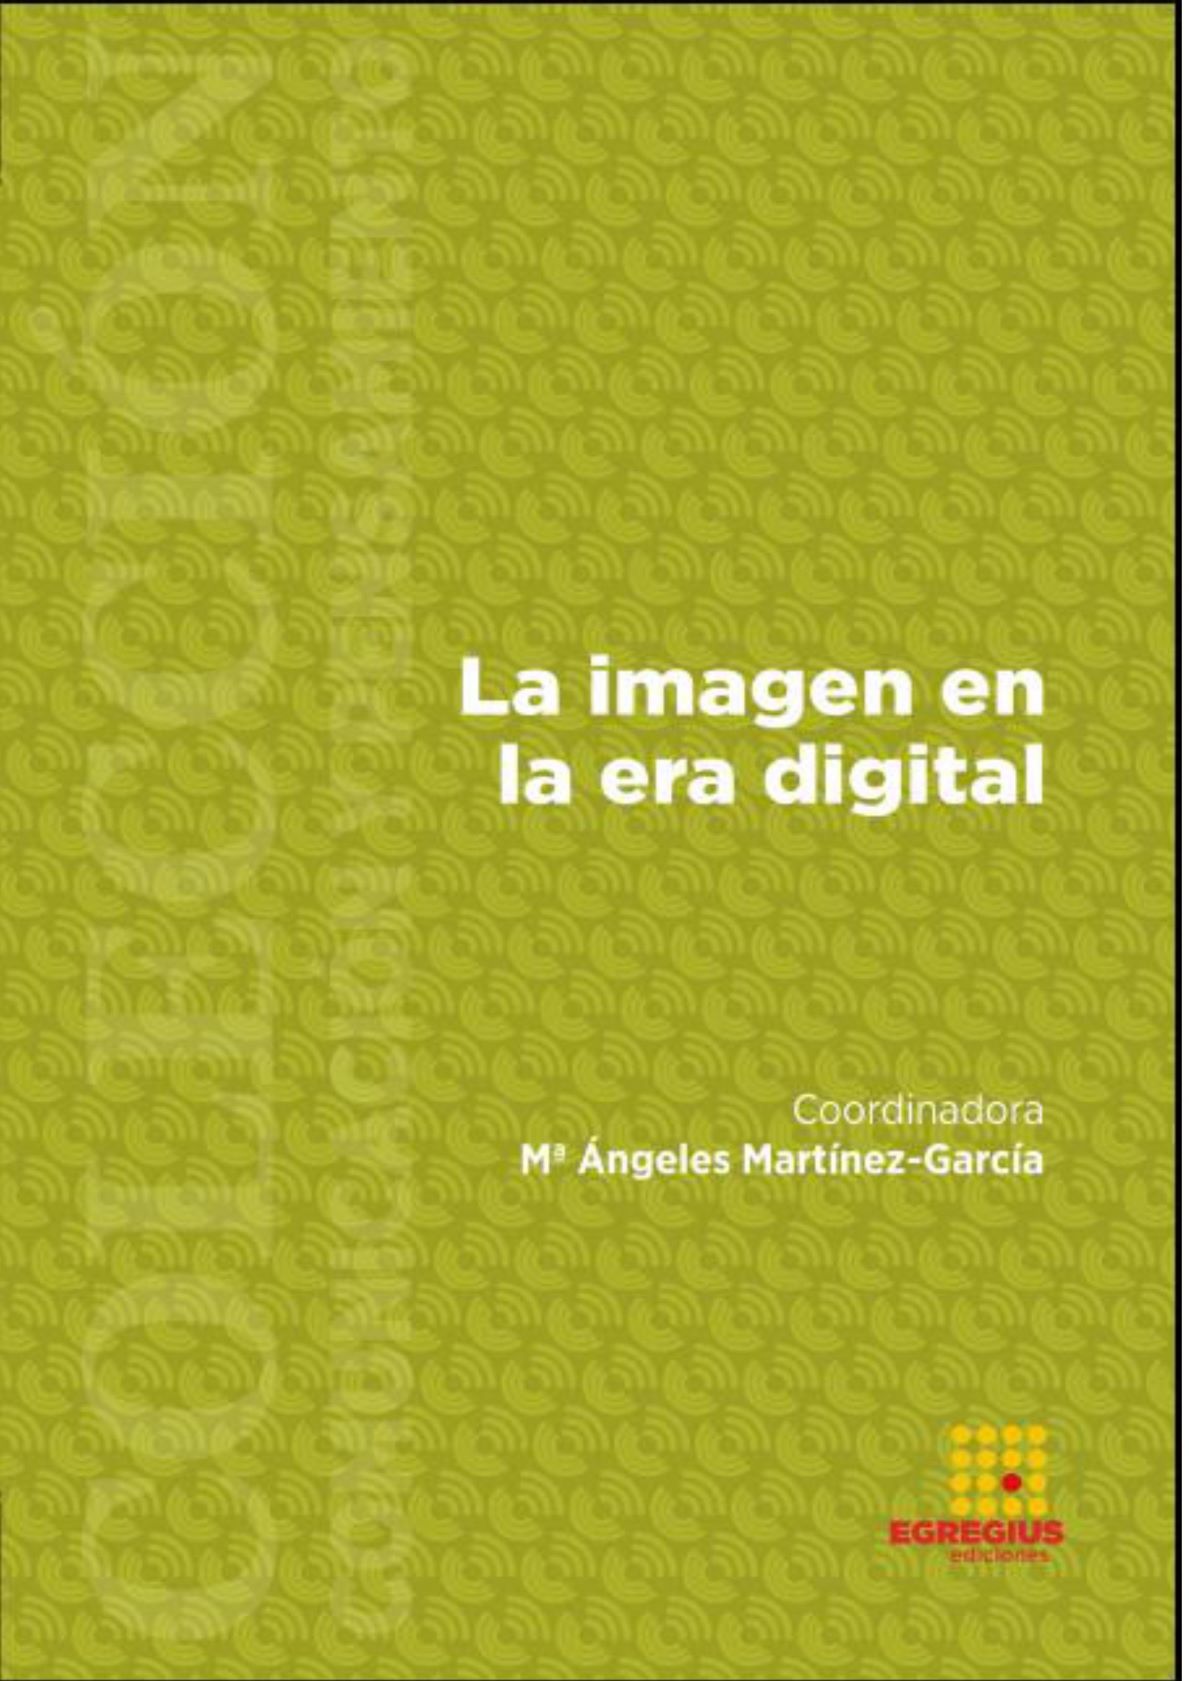 Imagen de portada del libro La imagen en la era digital